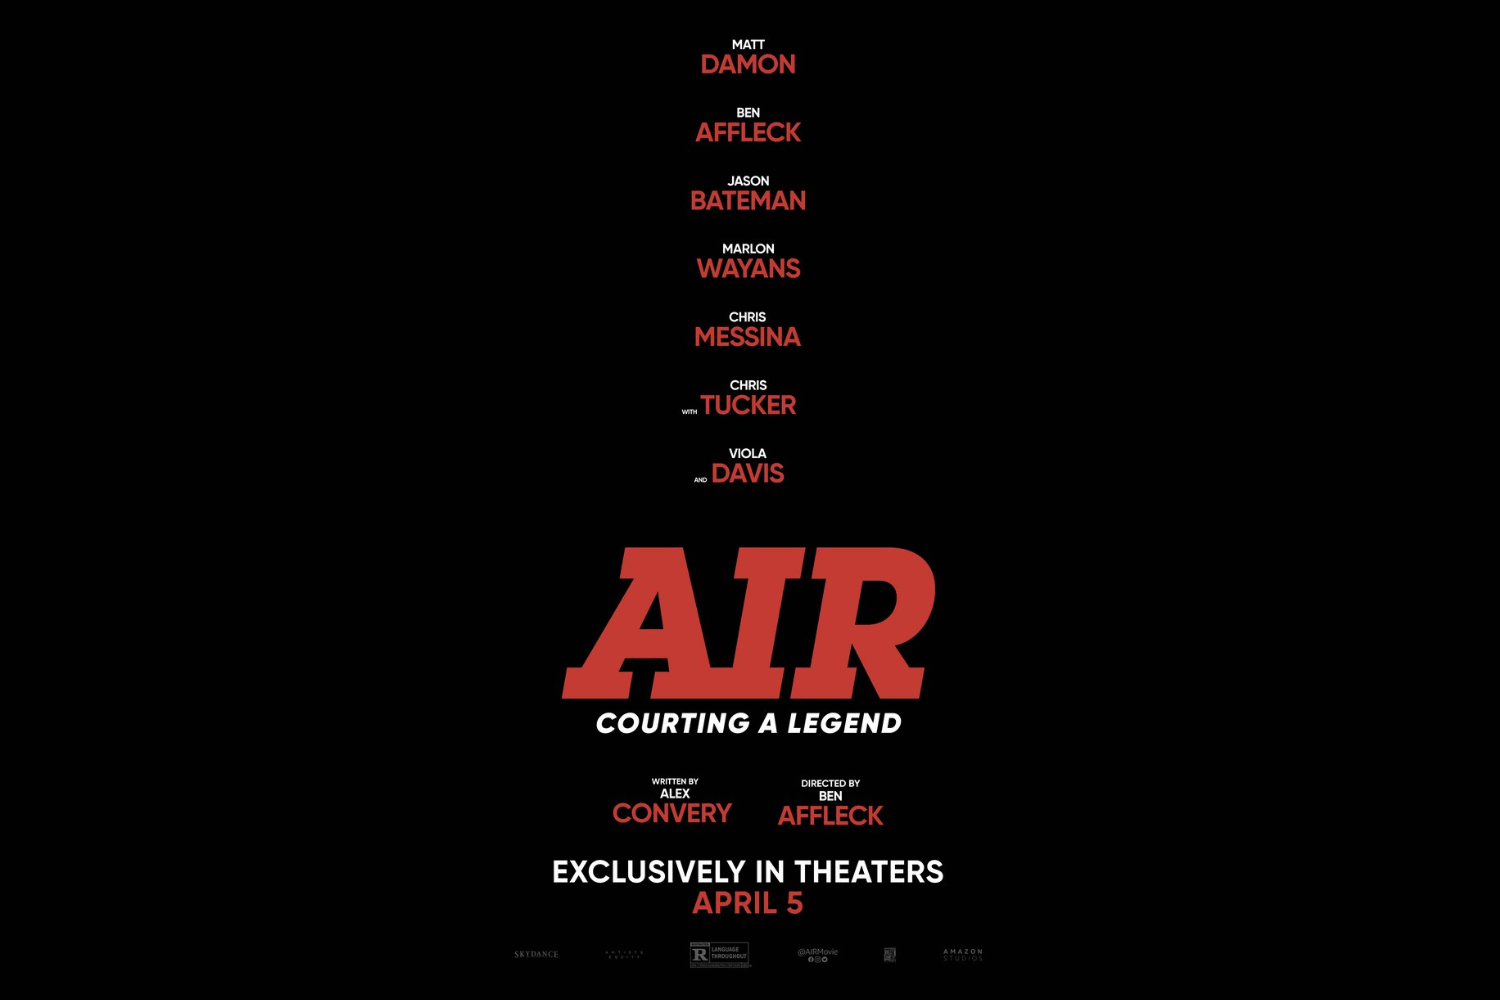 Eerste trailer 'AIR' met Ben Affleck en Matt Damon onthuld